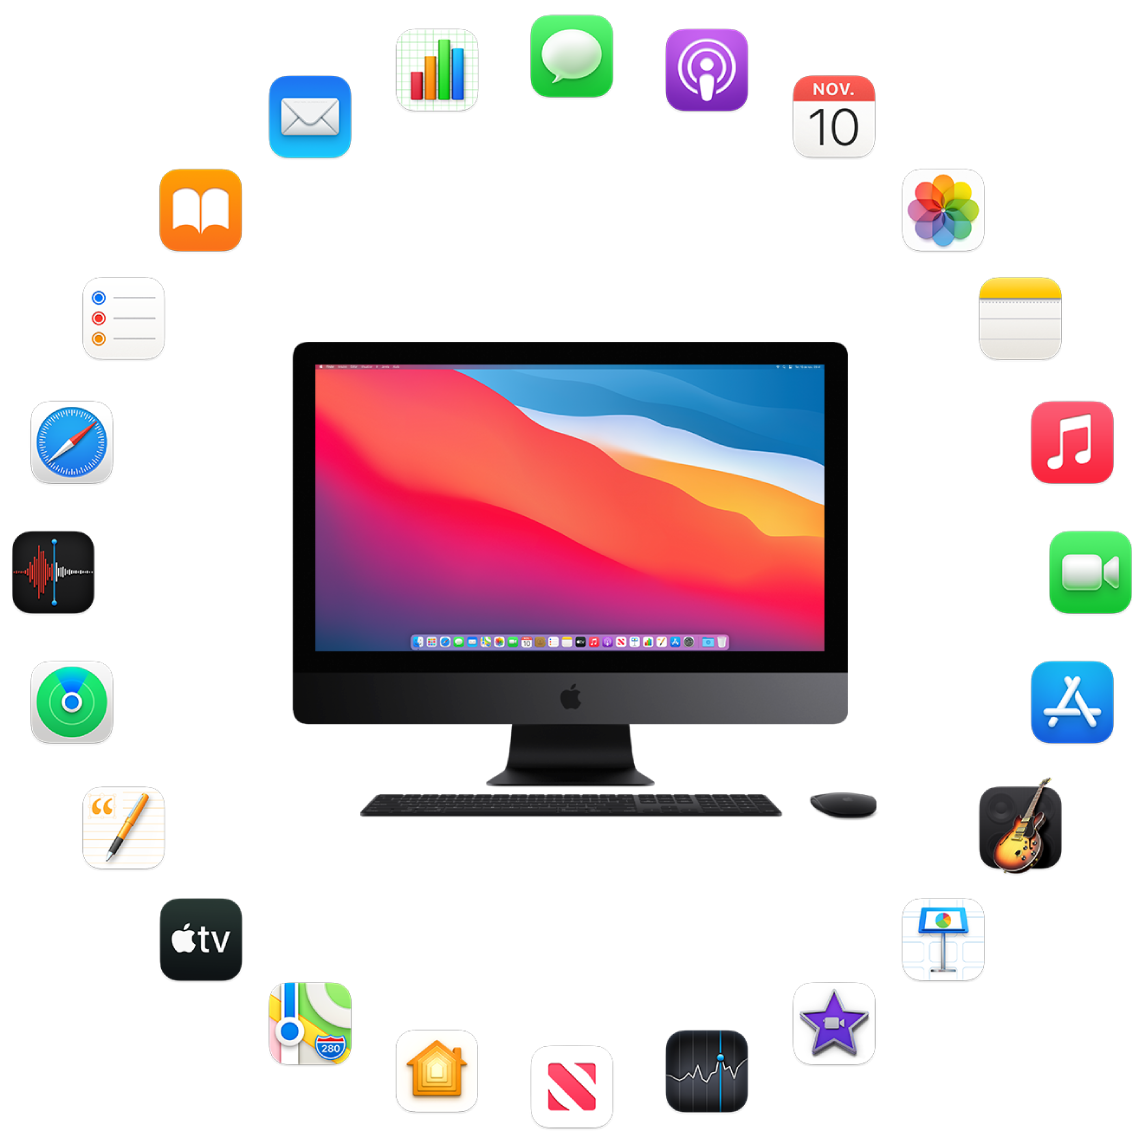 iMac Pro rodeado pelos ícones dos apps que vêm instalados e que são descritos nas seções a seguir.